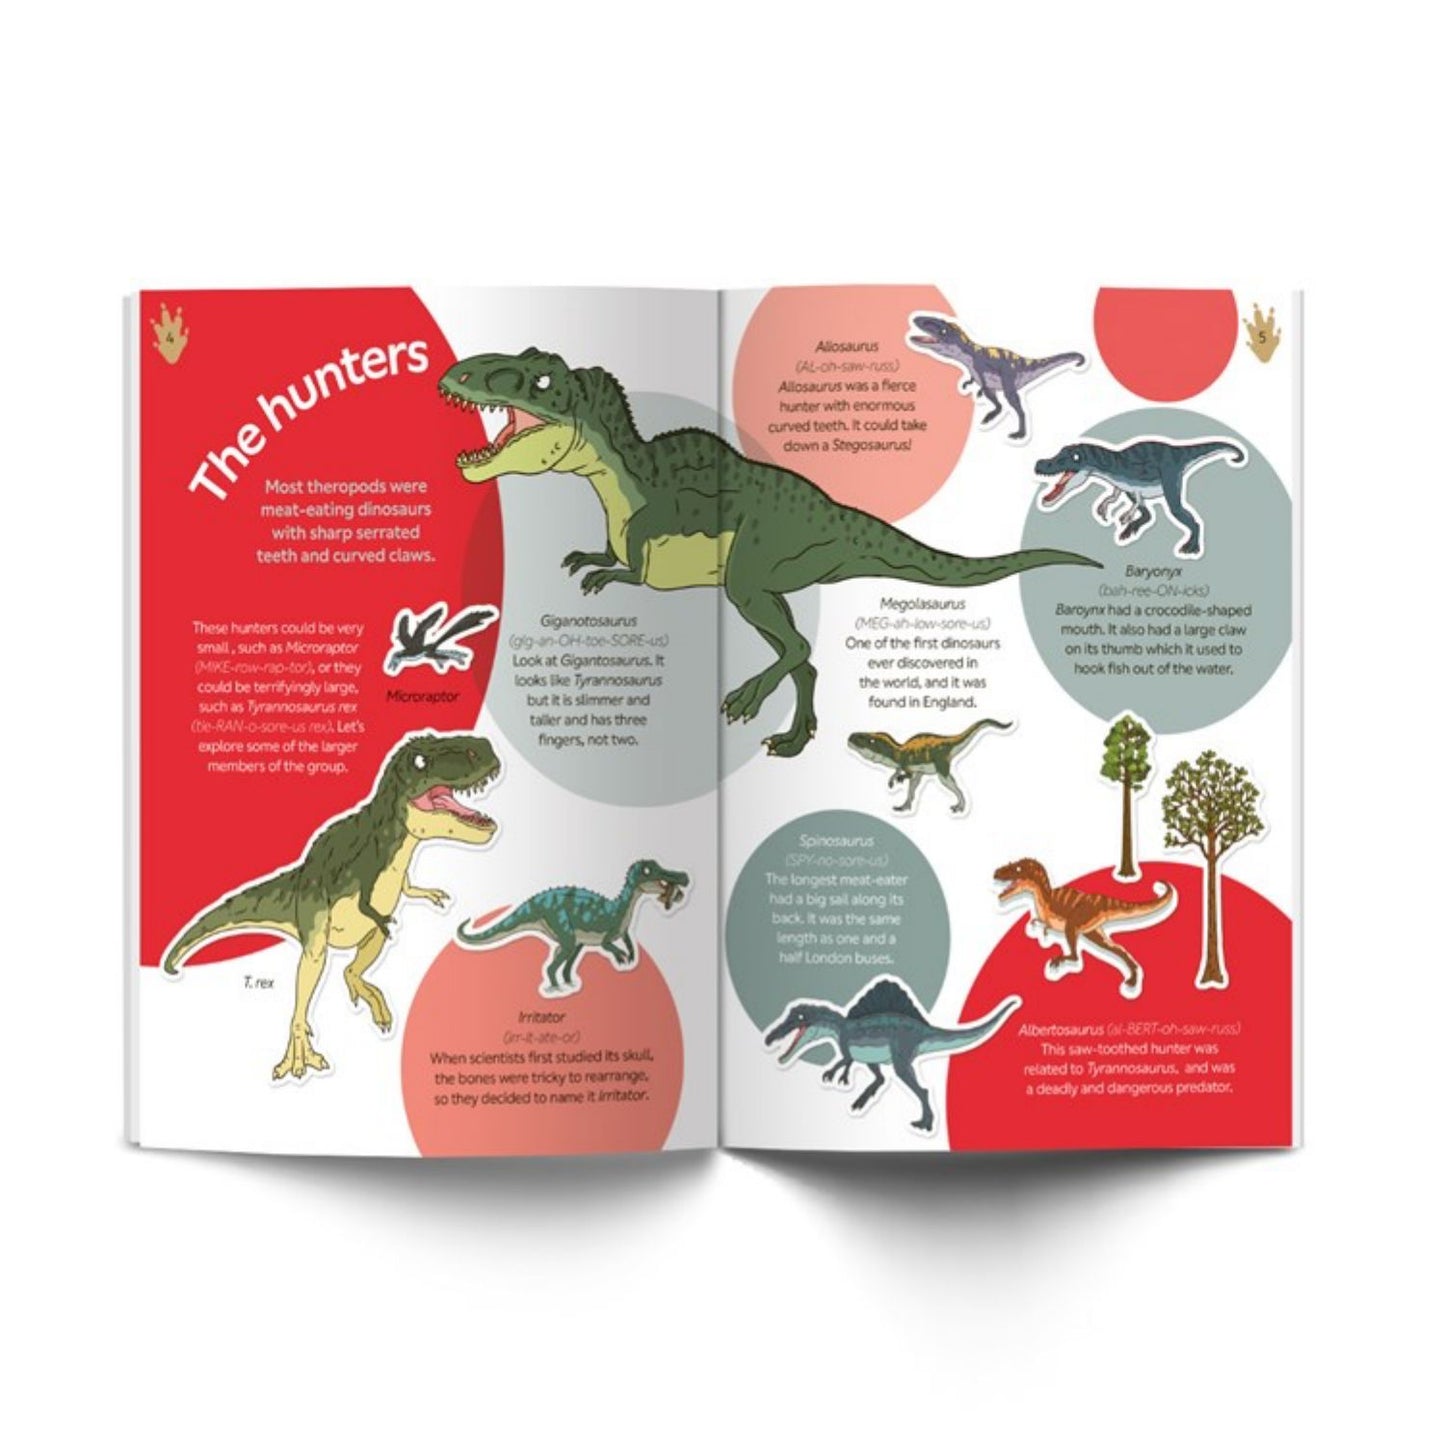 Dinosaur Sticker Book | Children's Activity Book